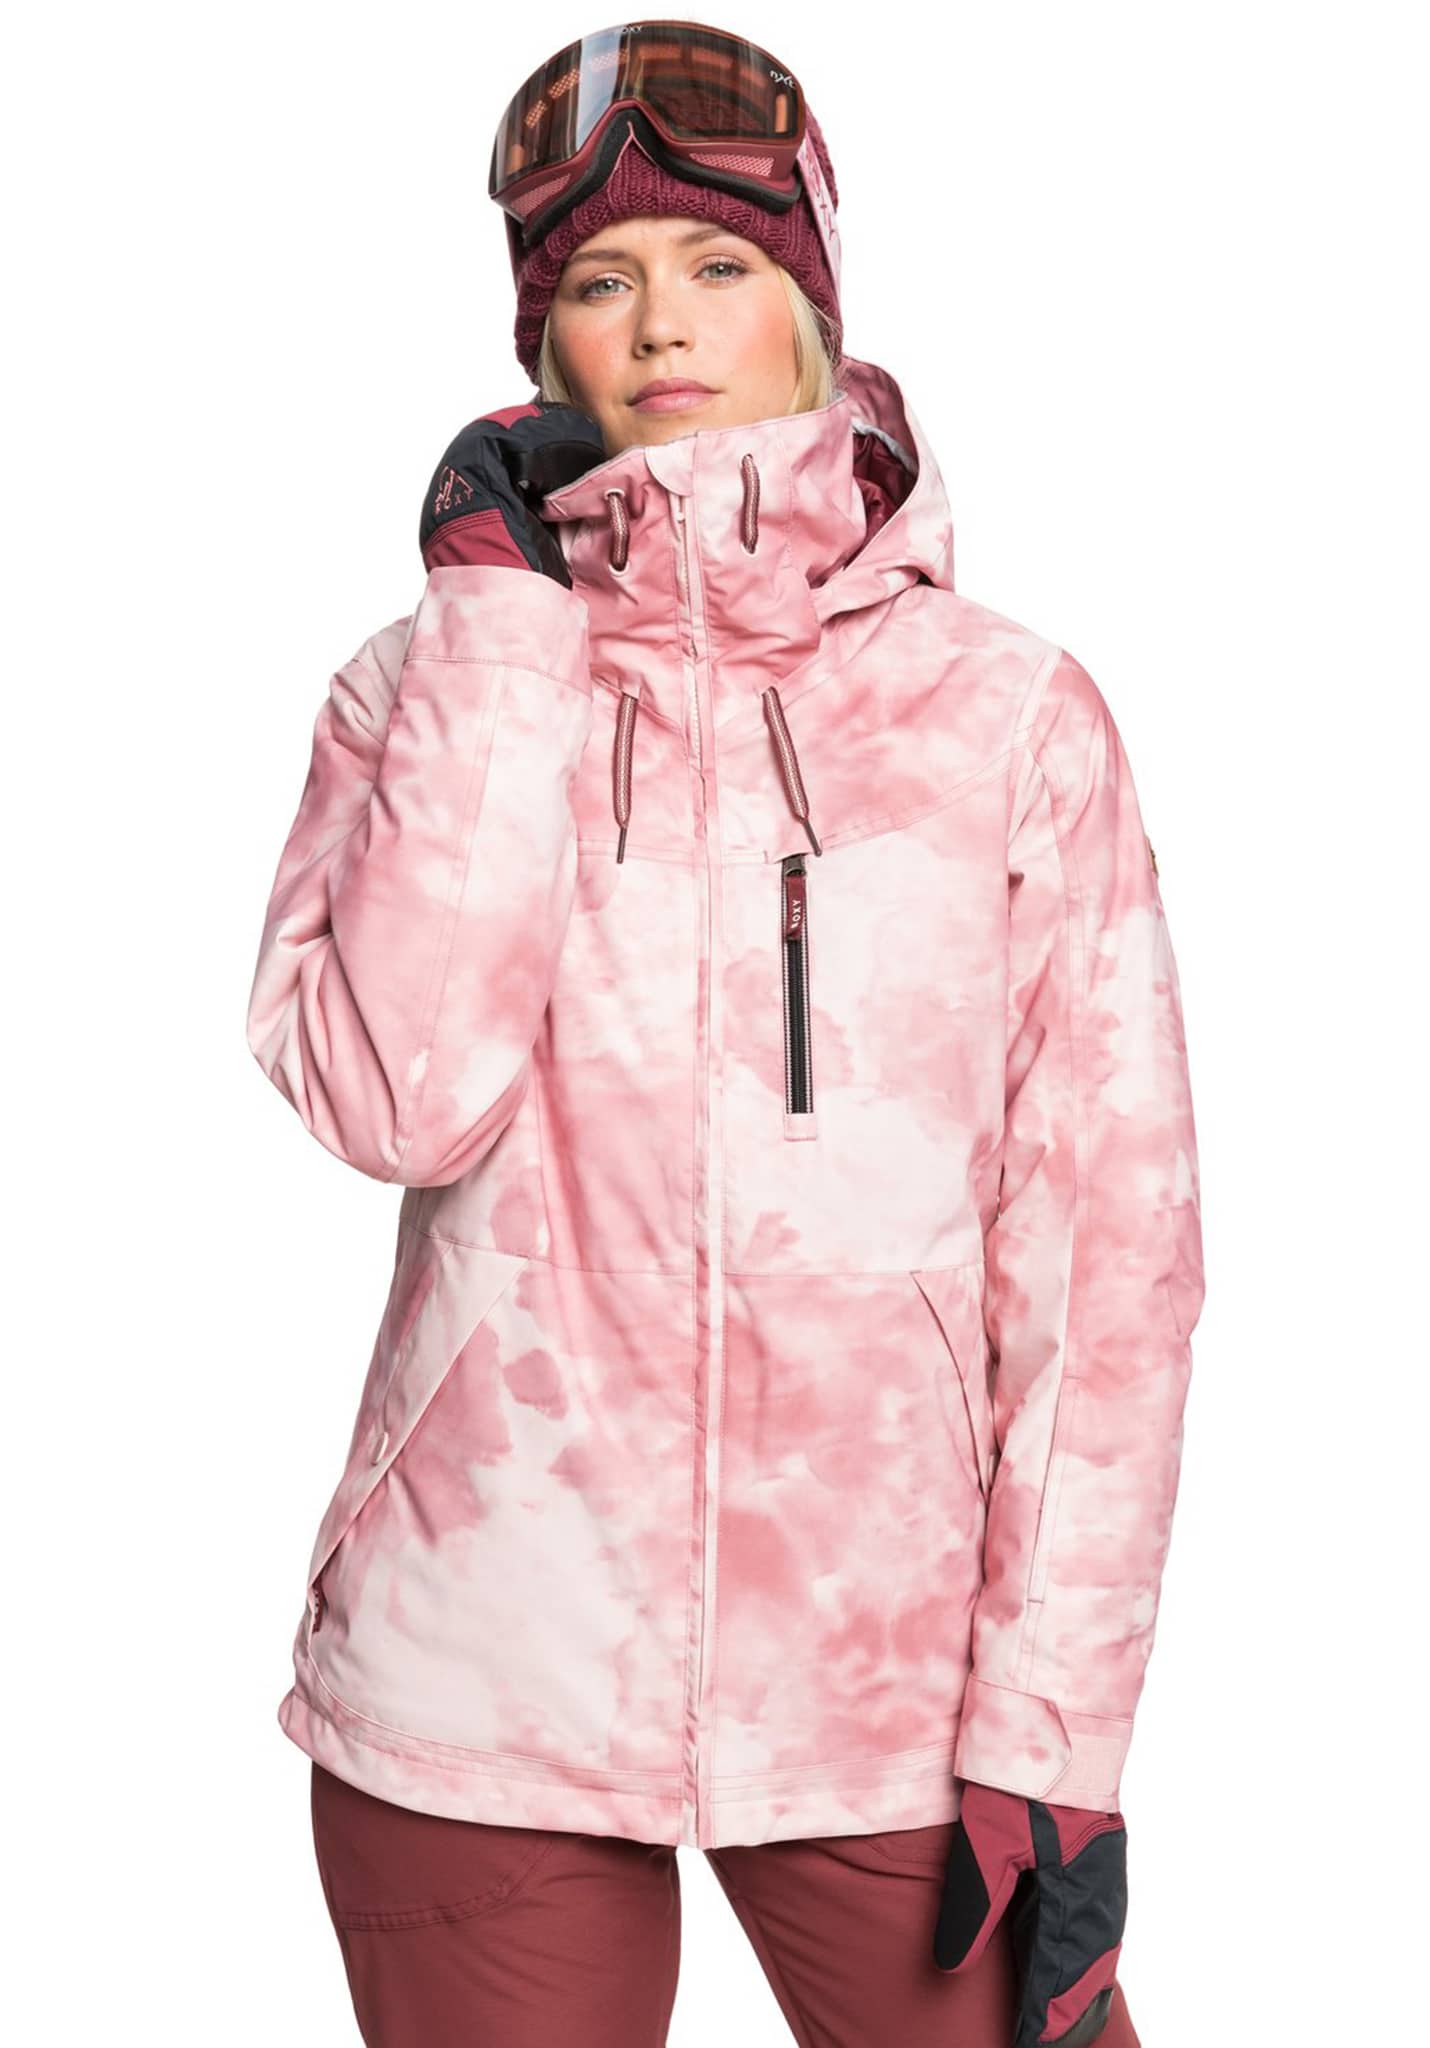 Roxy Presence Snowboardjacken silber rosa krawattenfarbe XL